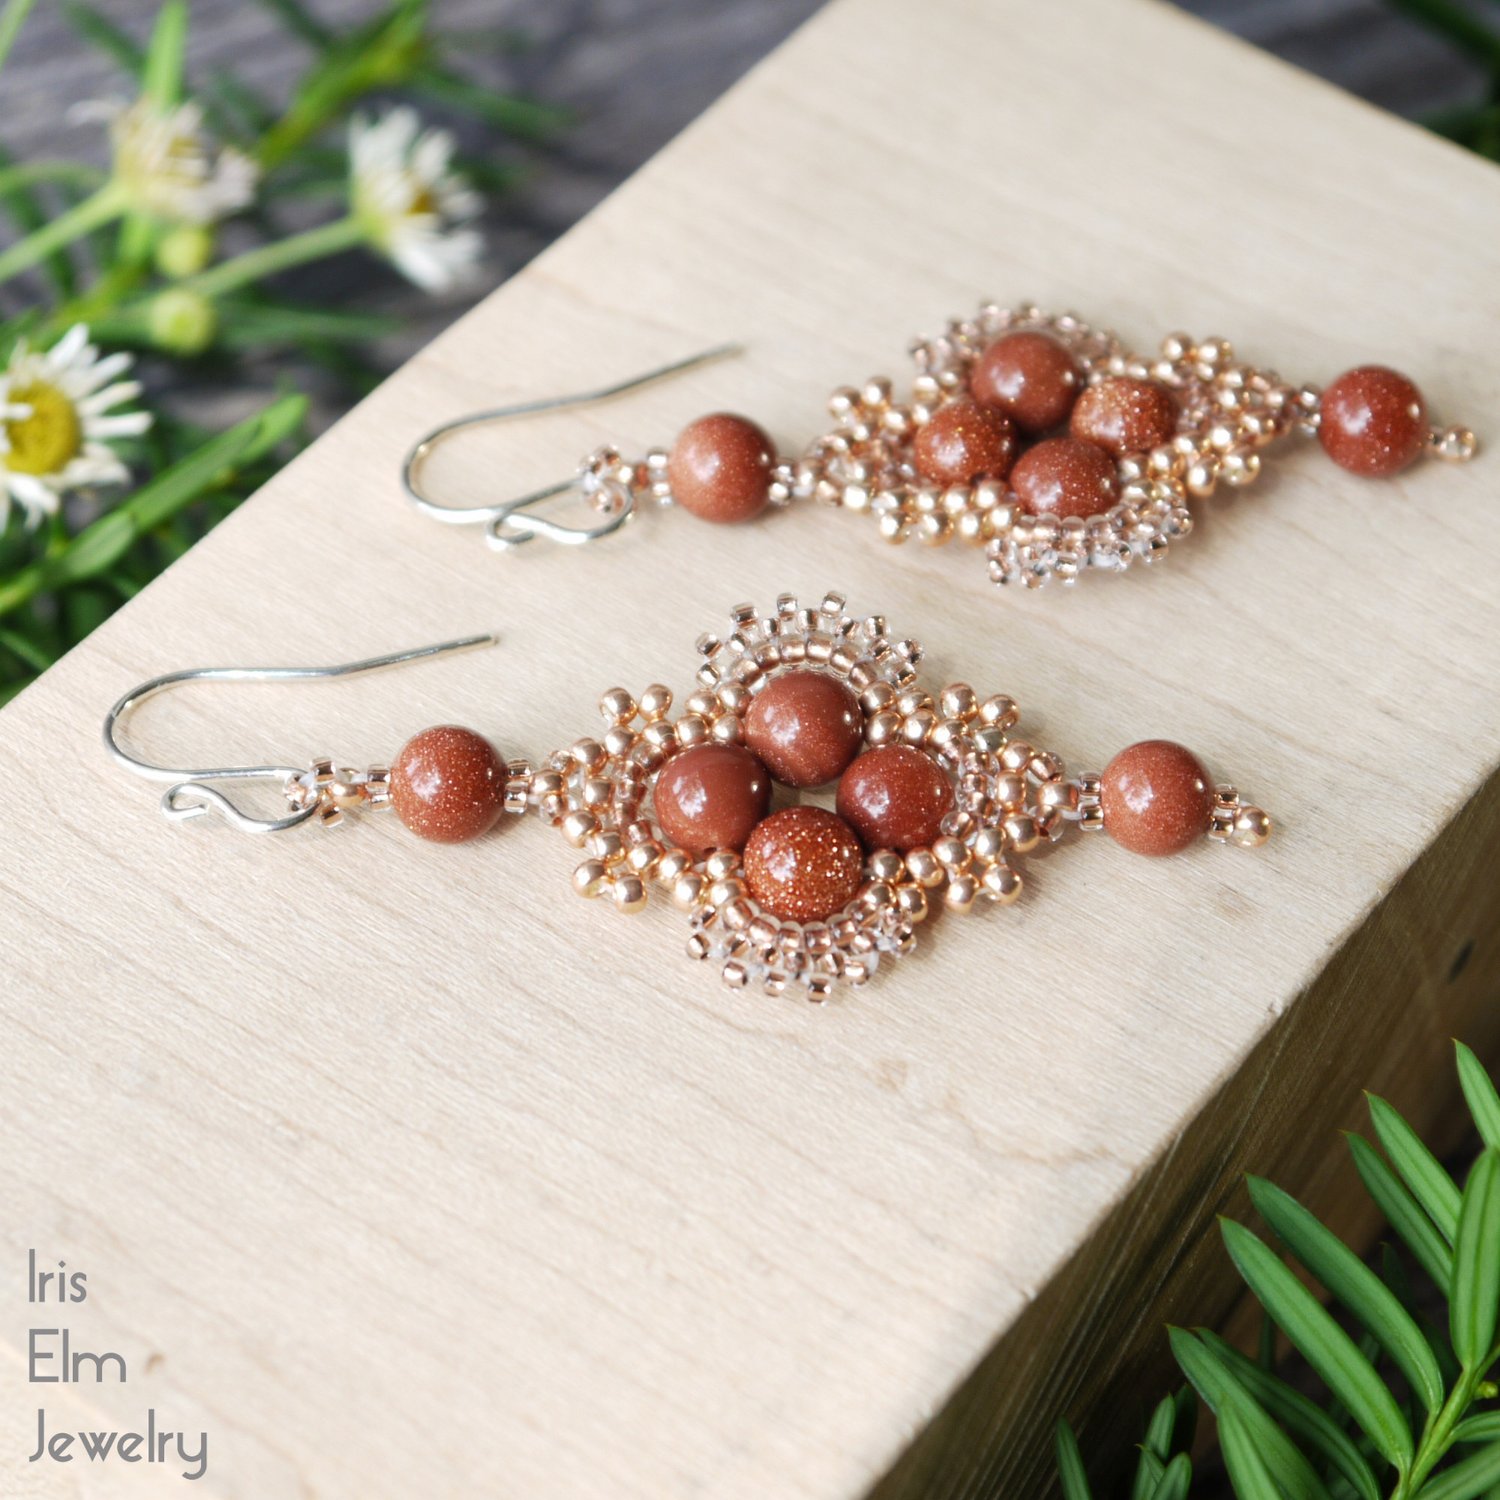 BoHo Copper Flower Dangle Earrings Glass Beads